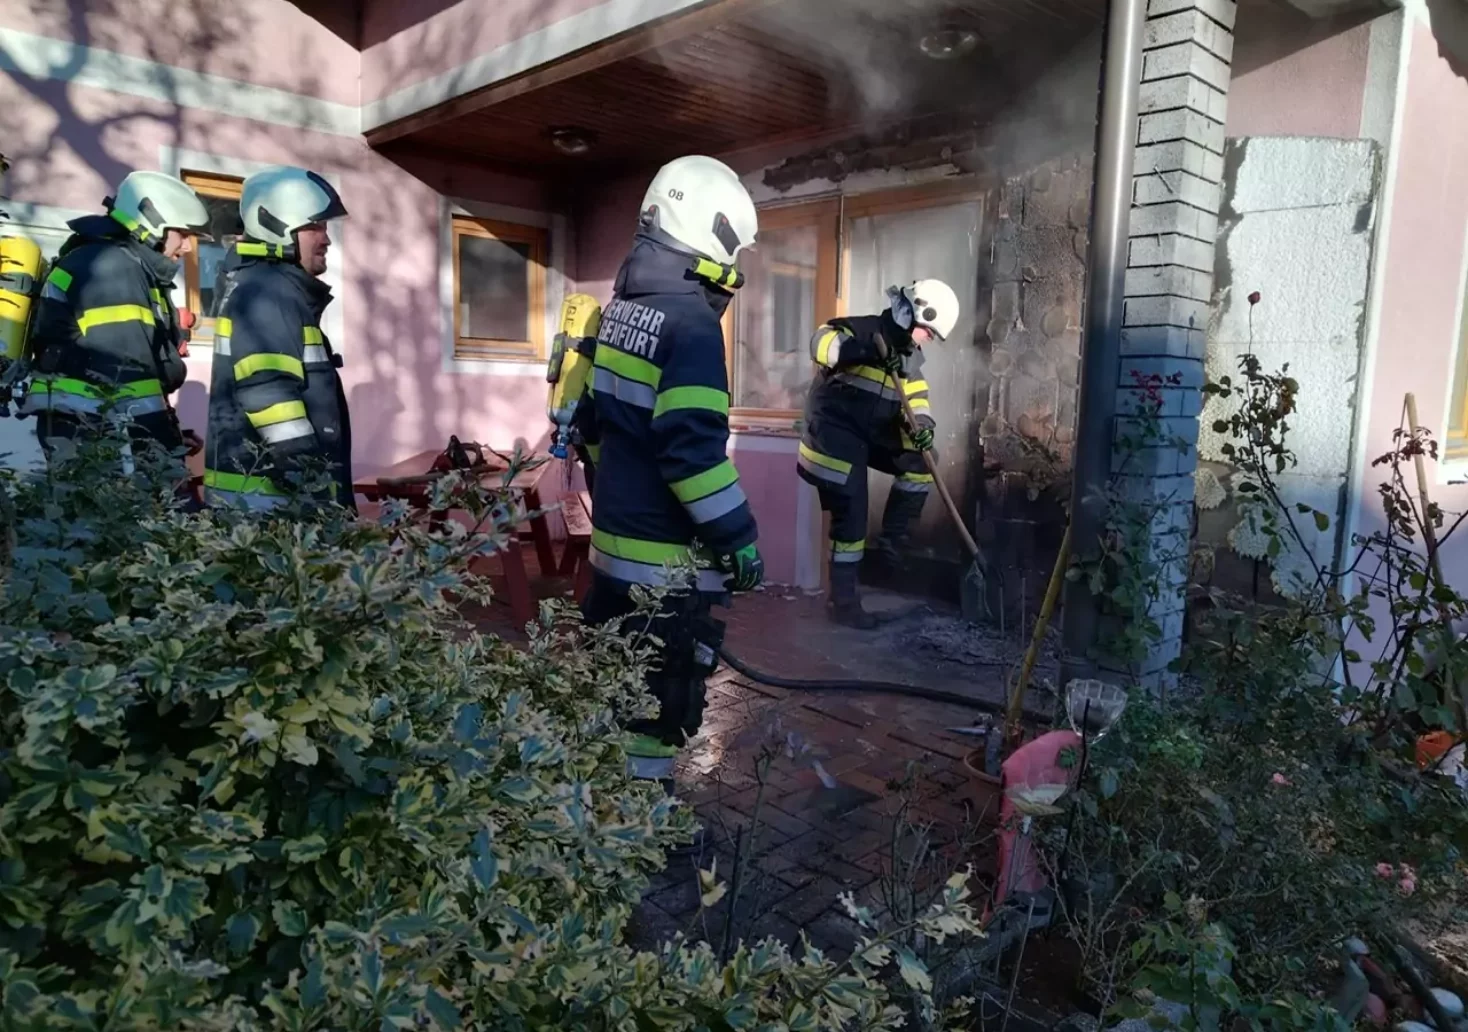 Foto in Beitrag von 5min.at: Zu sehen ist der Feuerwehreinsatz bei einem Hausfassadenbrand.